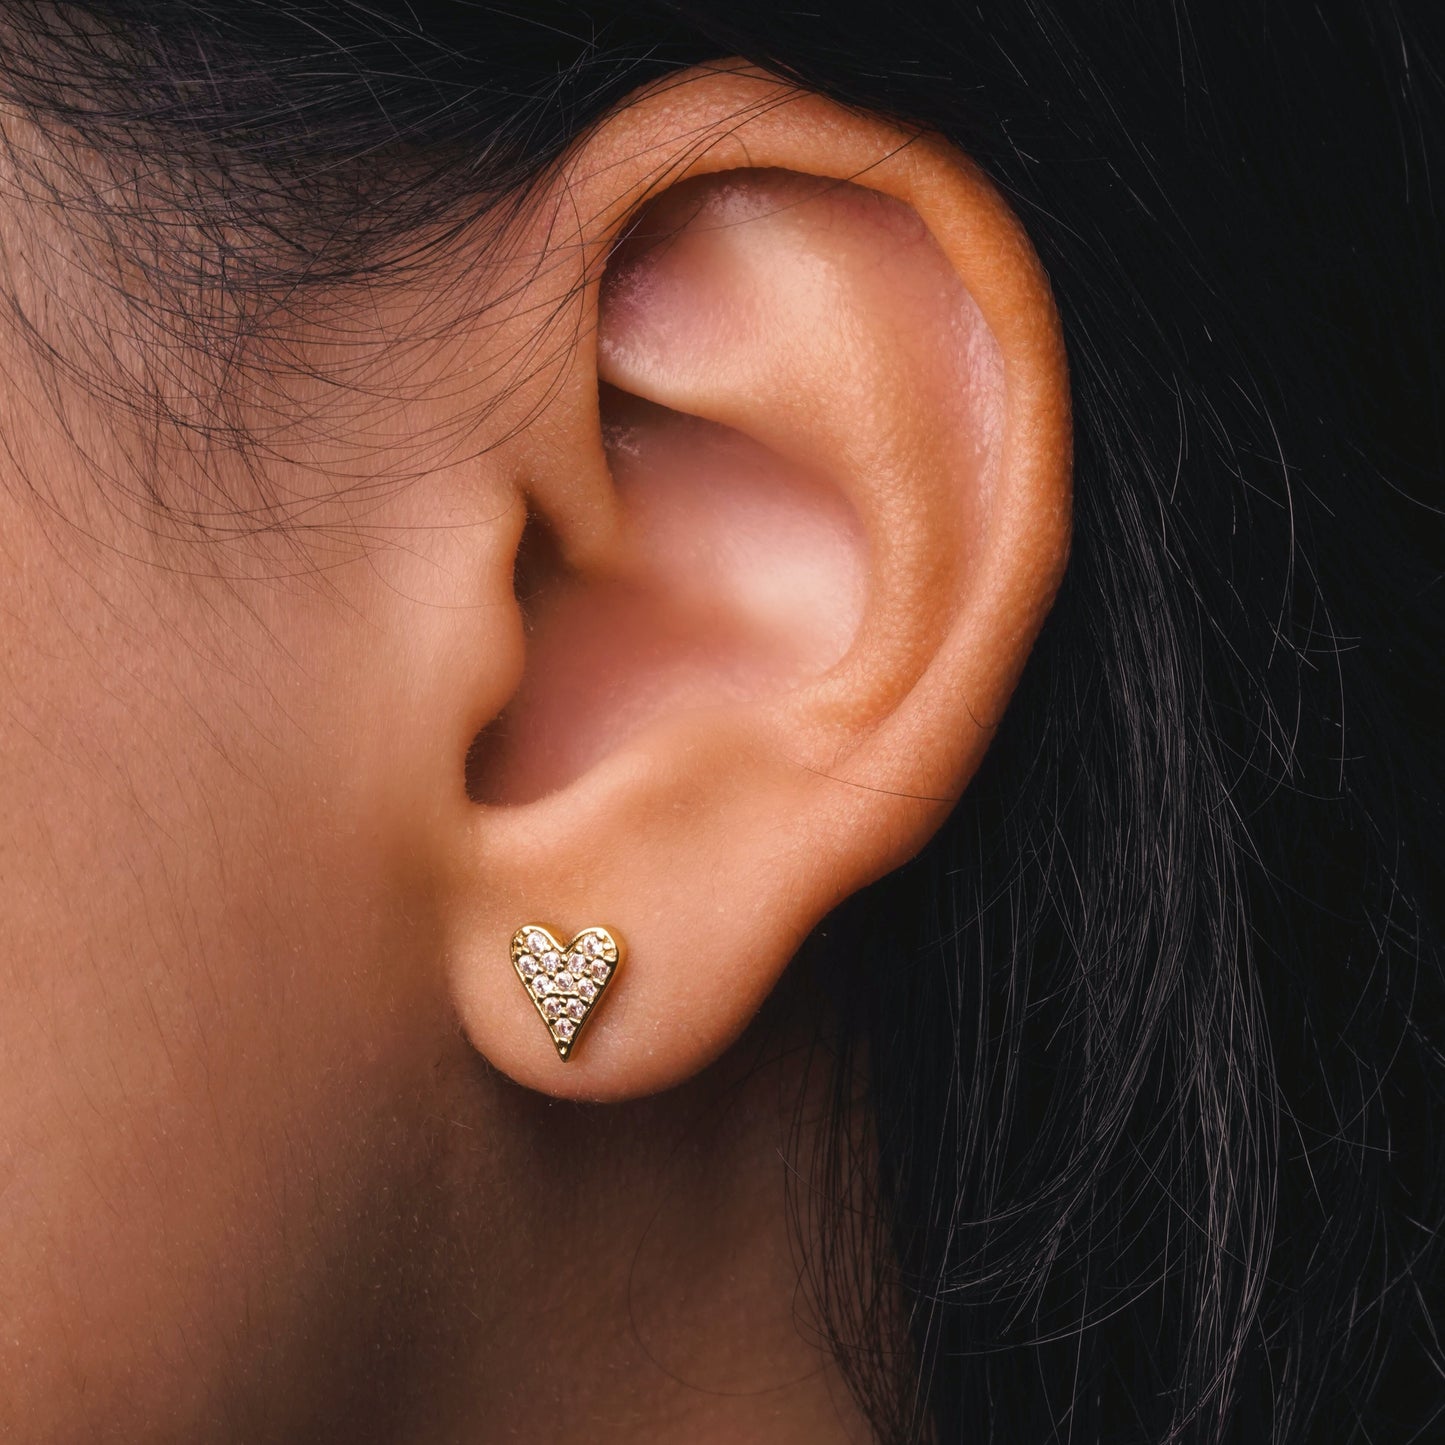 Gigi heart earrings